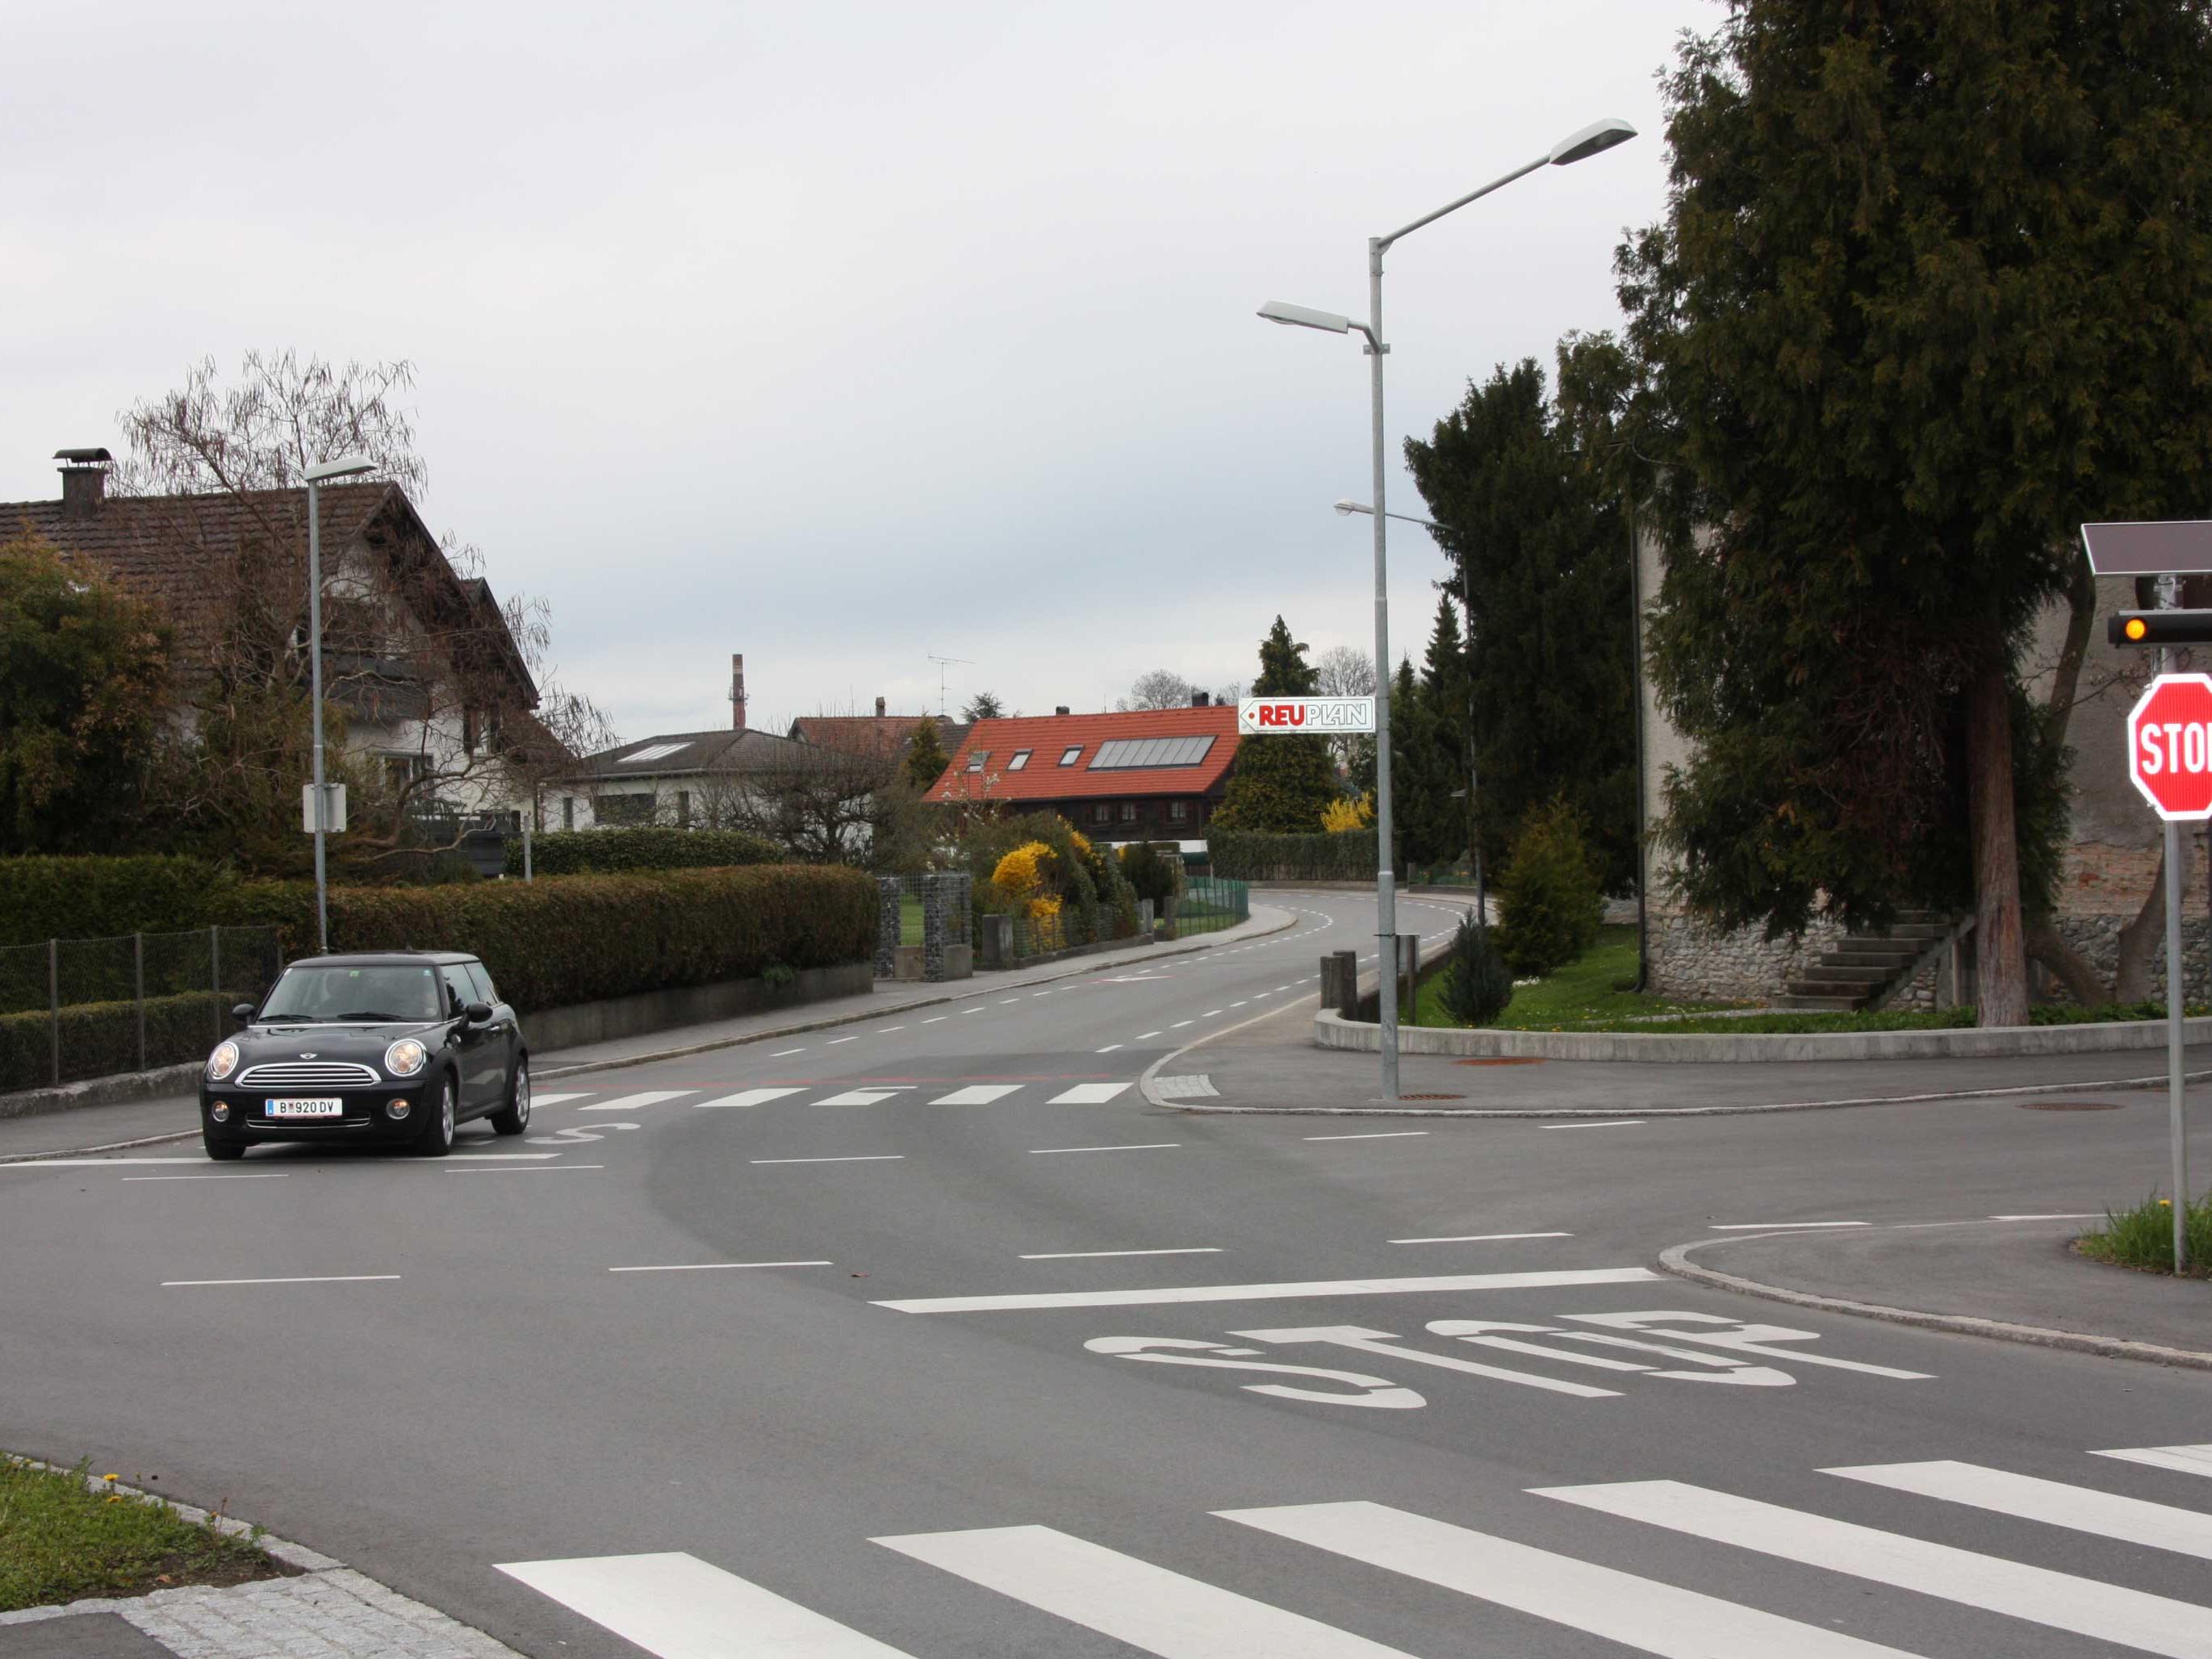 Für den neuen Fahrradweg nach Bregenz wurde auch bei Franks Limonadenfabrik in der Wallstraße die Vorrangregelung geändert.